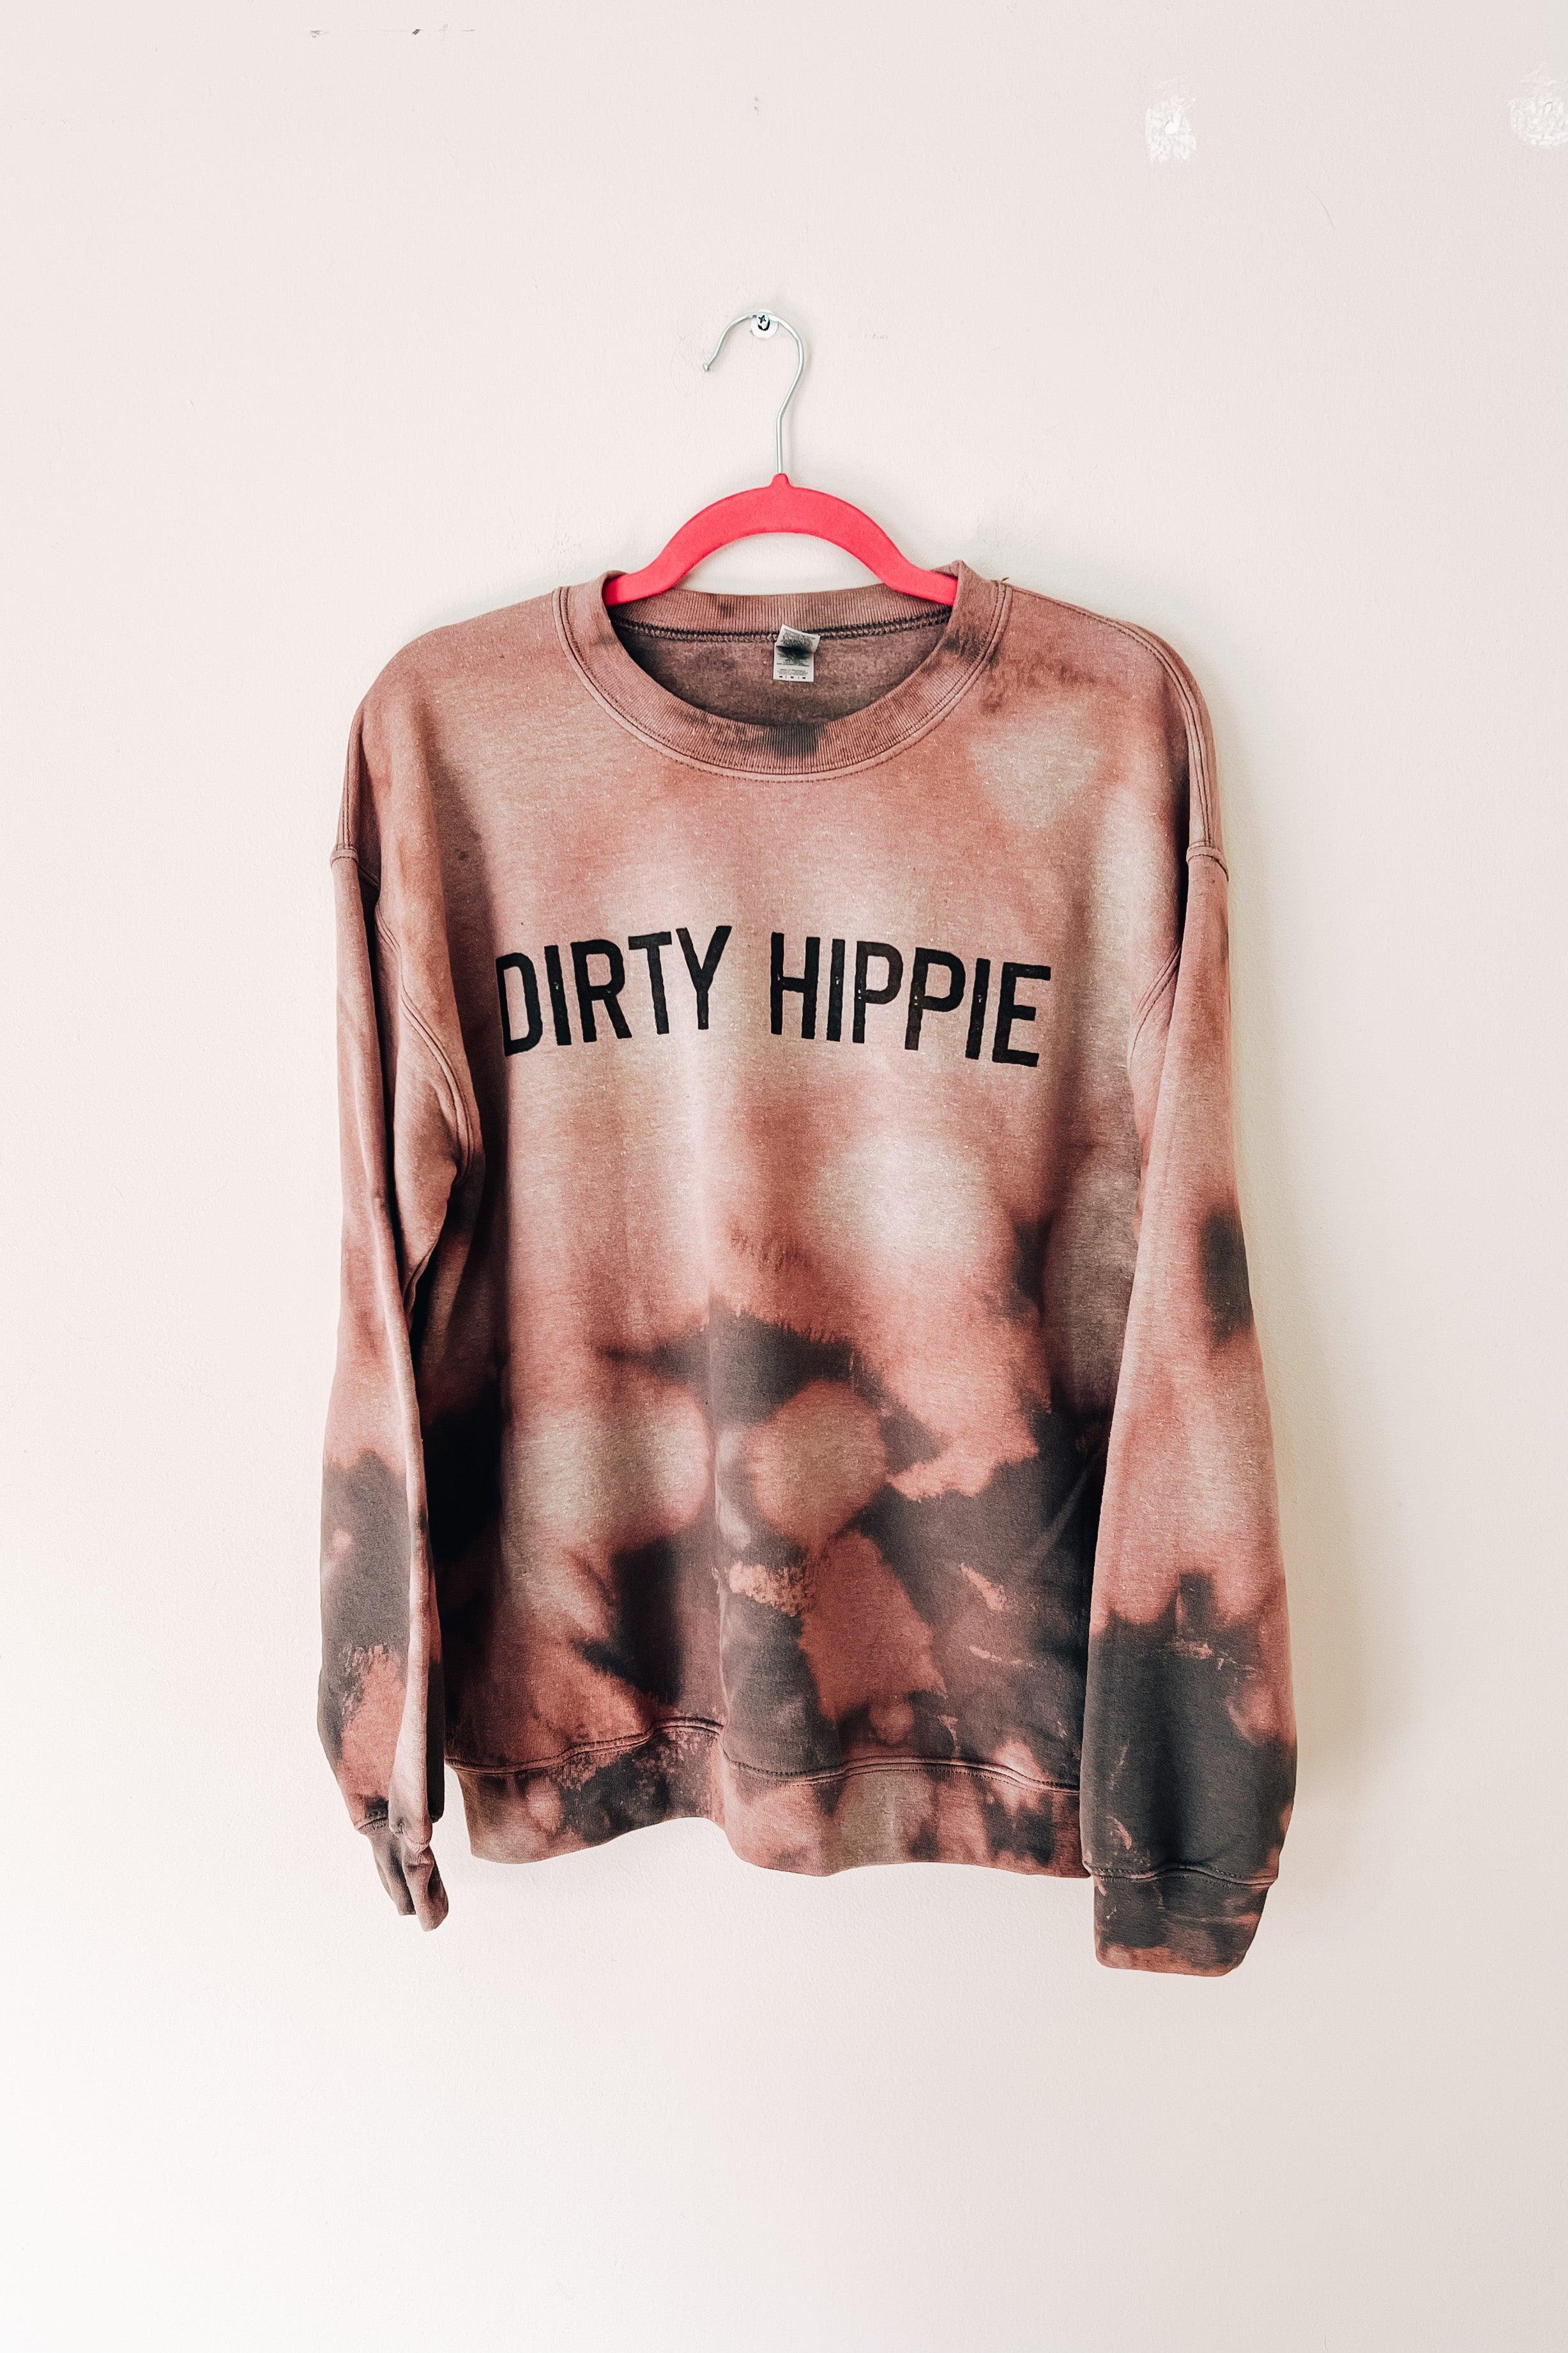 Dirty Hippie Bleached Sweatshirt - Atomic Wildflower